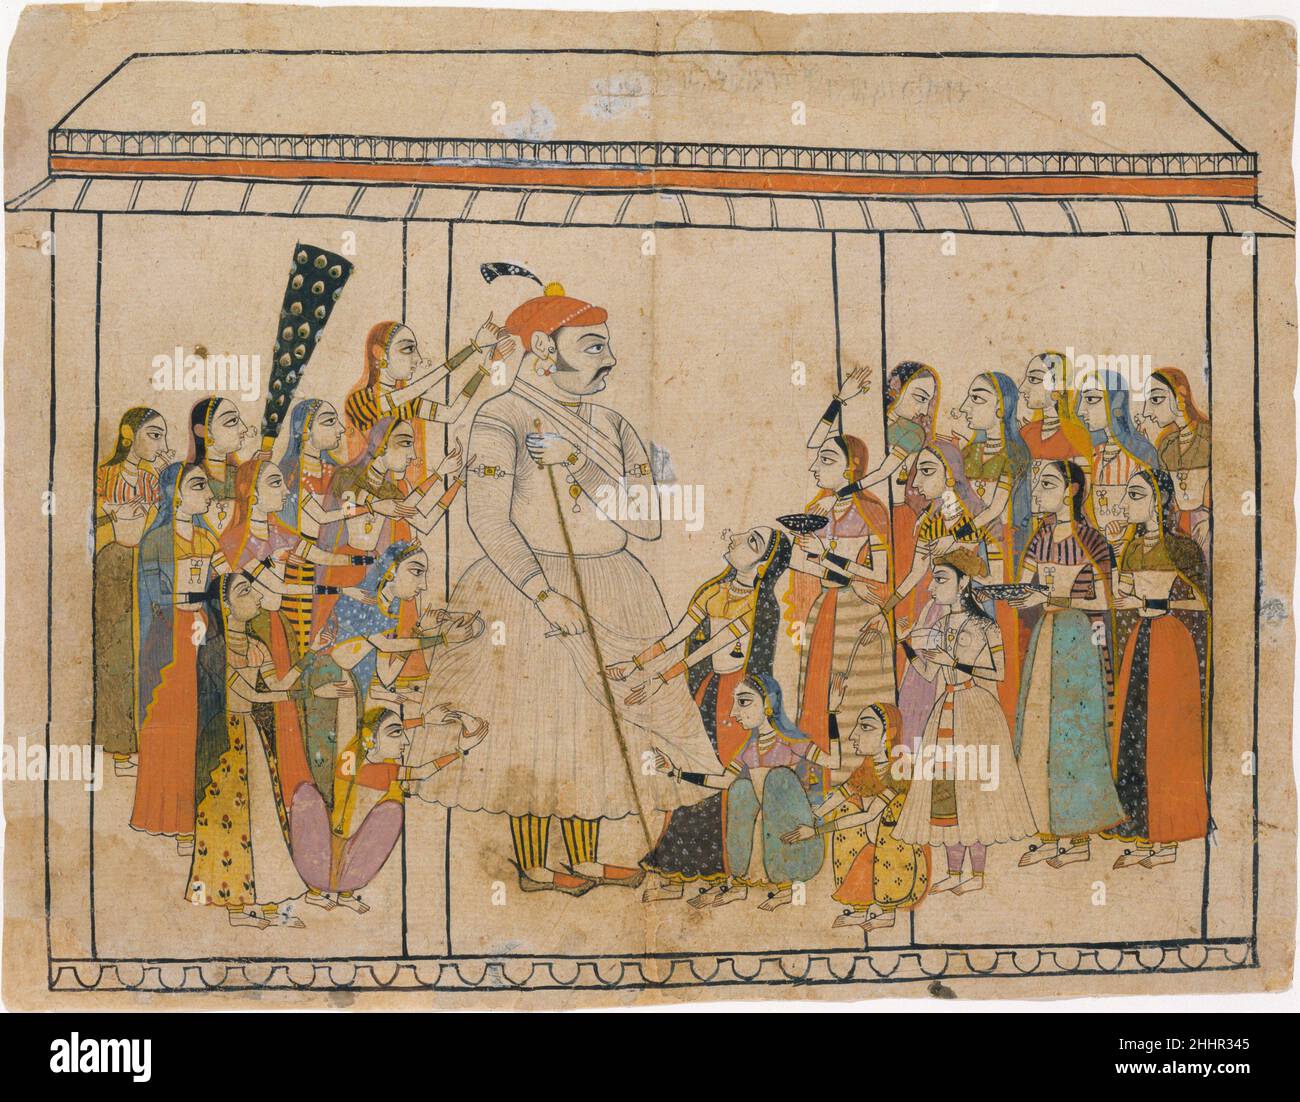 Maharaja Raj Singh adoré par ses Dames ca.1710–20 Inde (Rajasthan, Sawar) le petit État de Sawar a été fondé en 1627, et ses rajas sont liées à celles de Mewar.Au début du XVIIIe siècle, un artiste travaillant pour Maharaja Raj Singh (1646–1730) a produit un groupe exceptionnel et stylistique distinct de dessins de couleur qui ont probablement été inspirés par des œuvres similaires, à son tour basées sur des prototypes de Mughal, en cours de fabrication à la cour de Mewari d'Amar Singh IIIci, Maharaja Raj Singh, énorme en échelle, est adoré par les dames comparativement diminutives de son harem, qui touchent et nouent des rubans à son c Banque D'Images